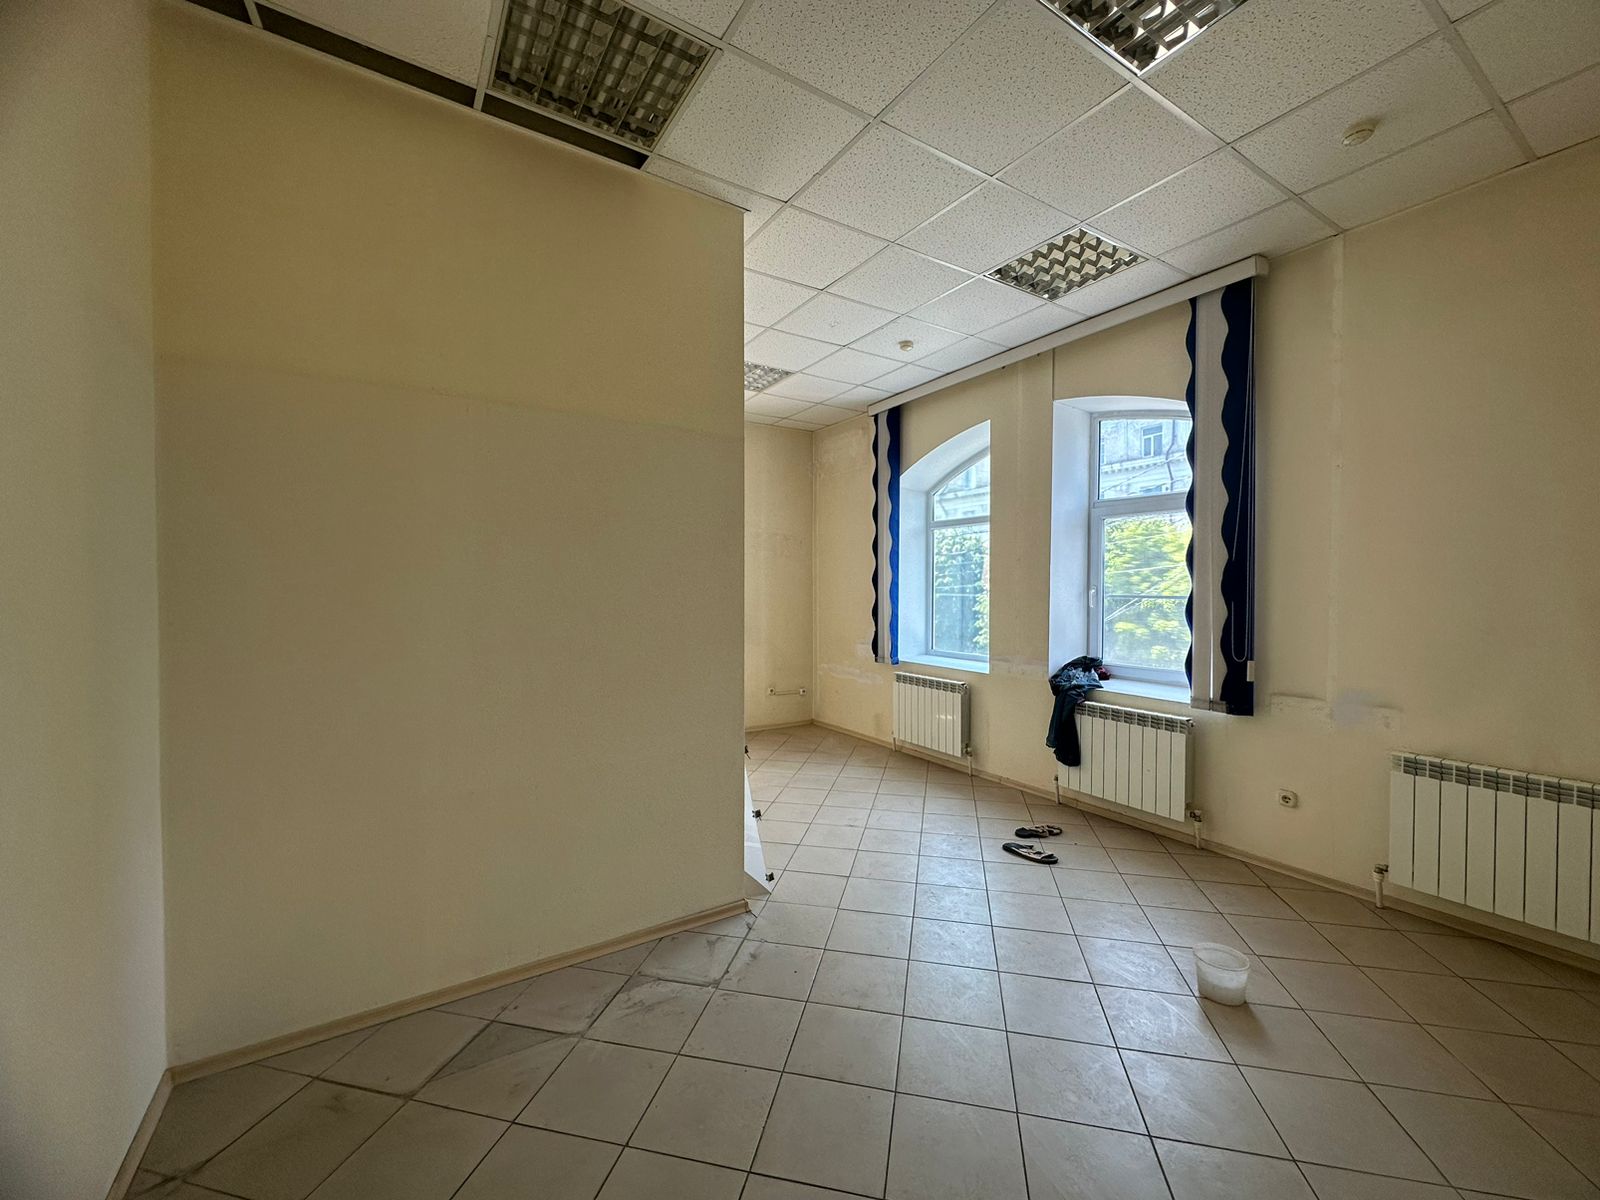 Предлагаем к аренде офисы на 2ом этаже по ул. Карла Маркса д.53, площадью 7м², напрямую от собственника._6